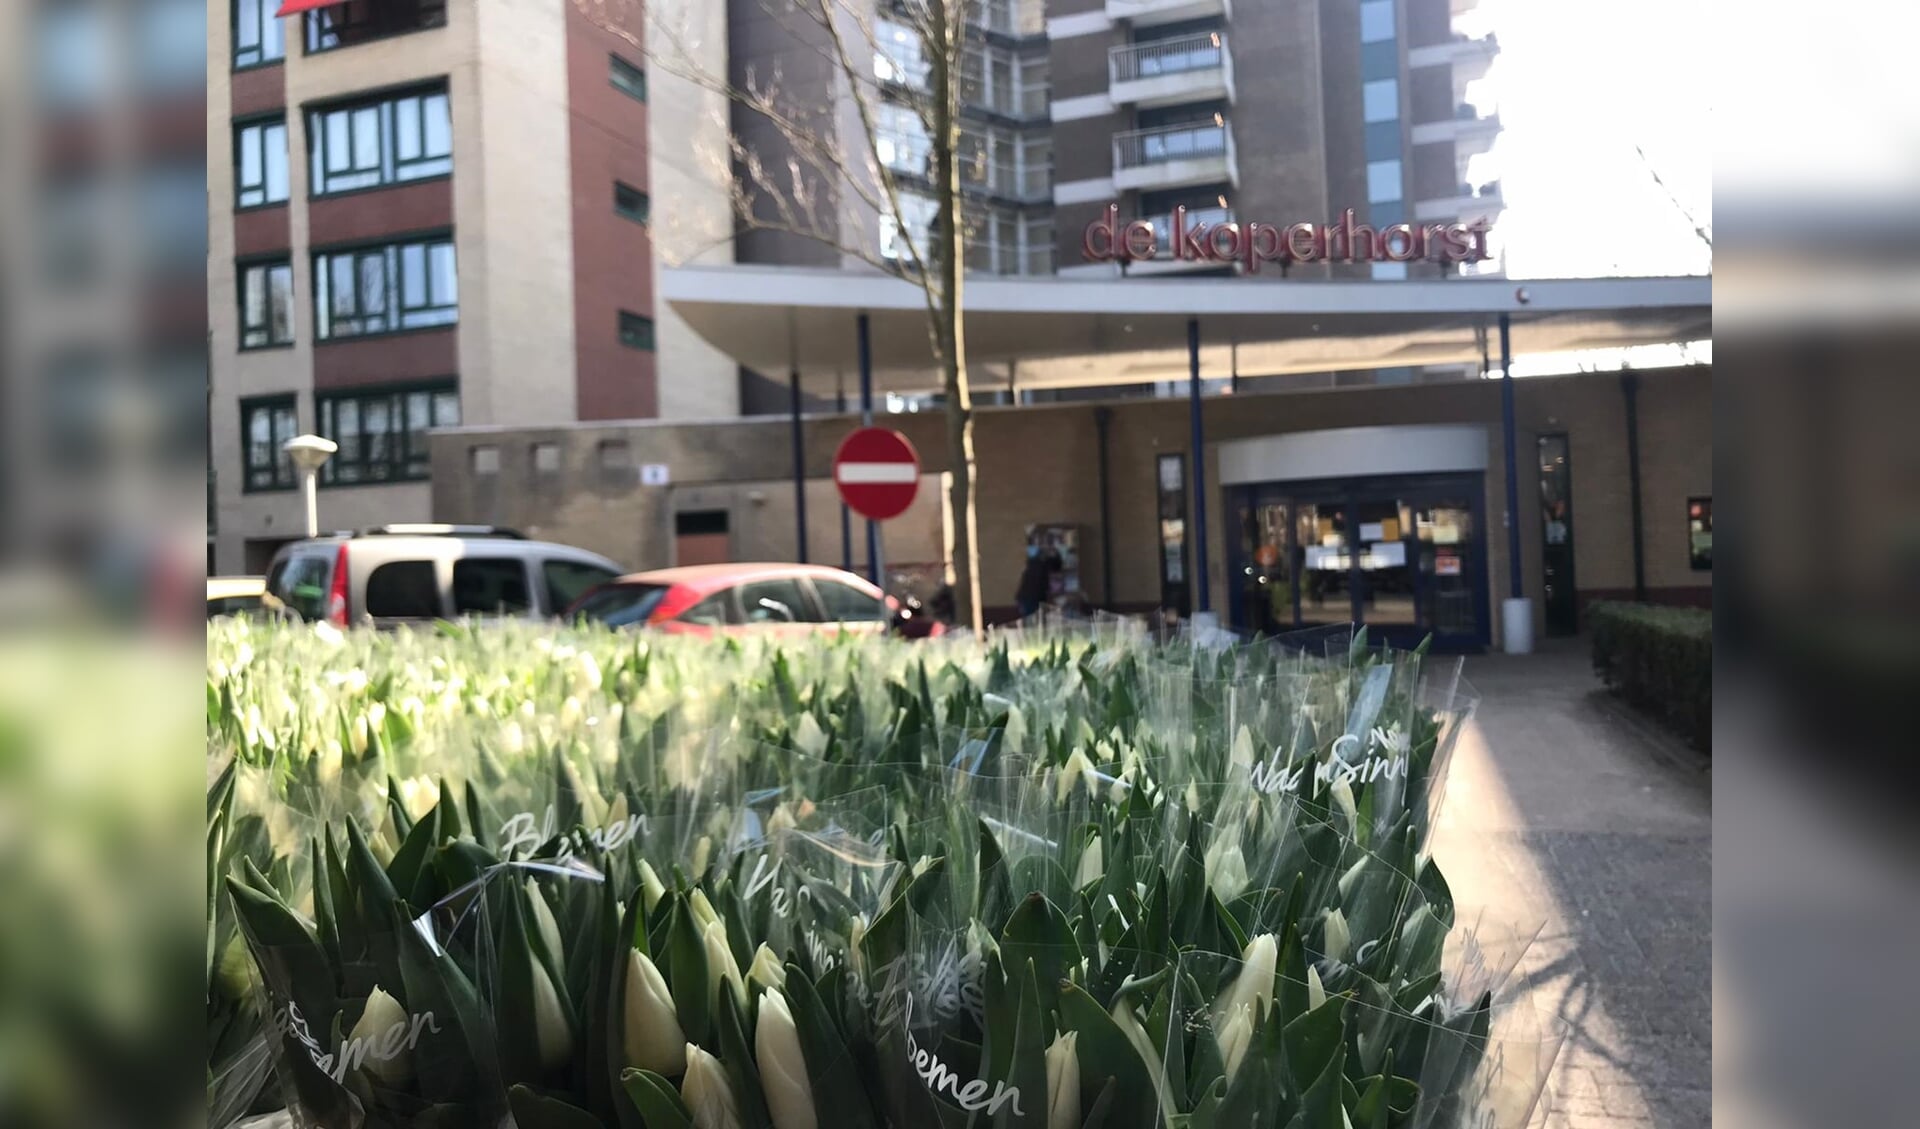 Tulpen voor De Koperhorst